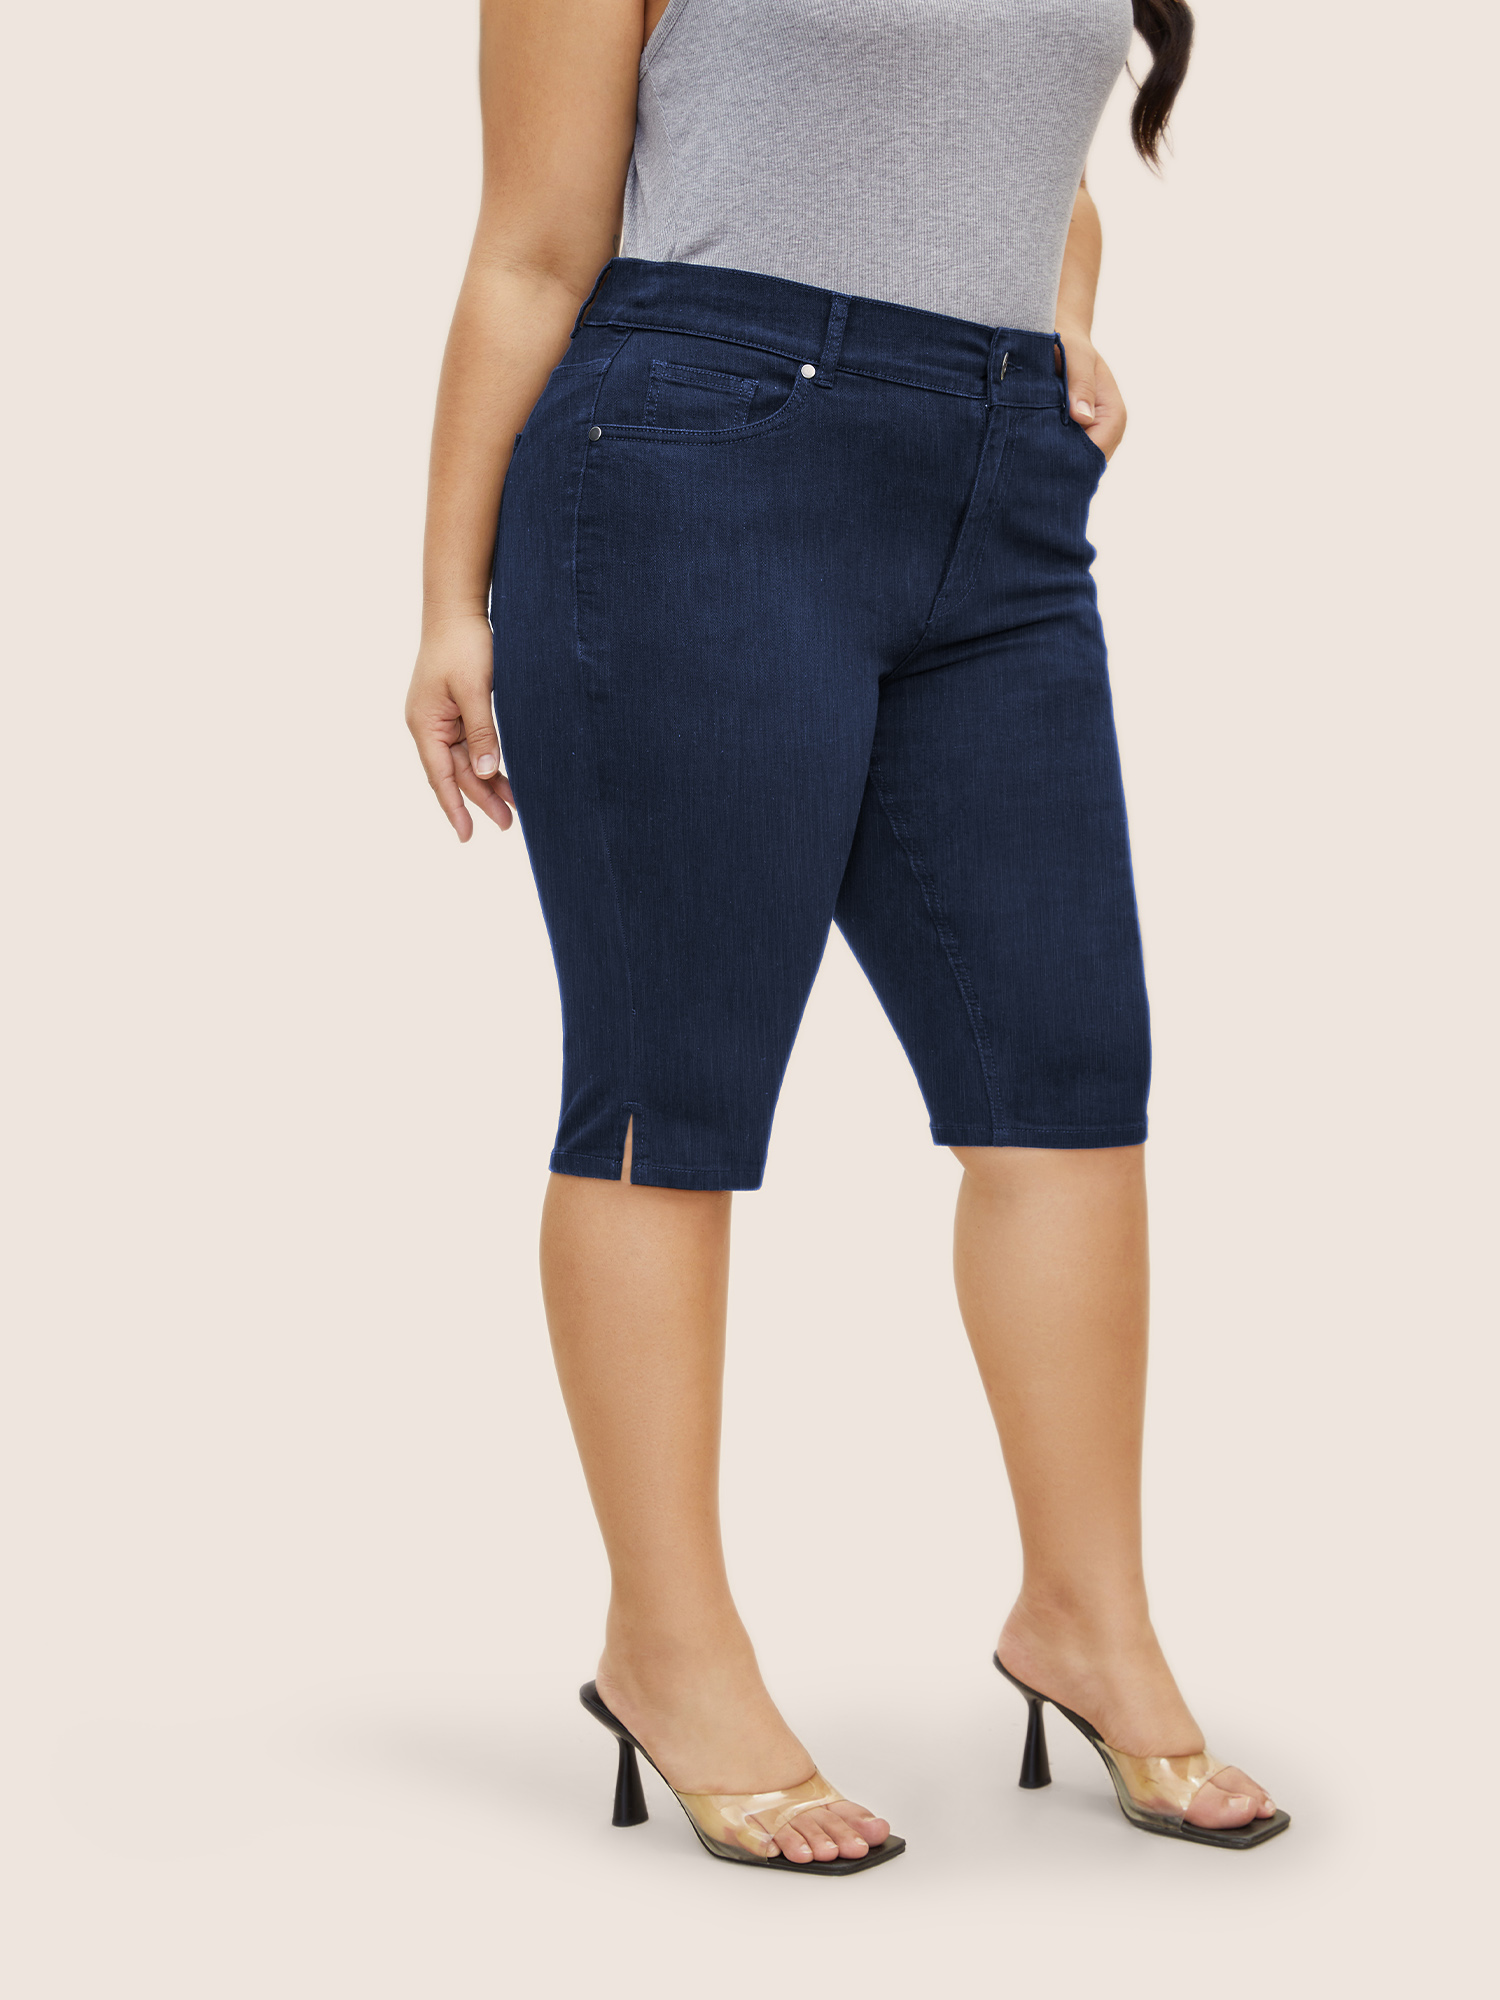 

Plus Size Black Wash Split Side Pull-on Jegging Jeans Women Denimindigo Casual Slit High stretch Slanted pocket Jeans BloomChic